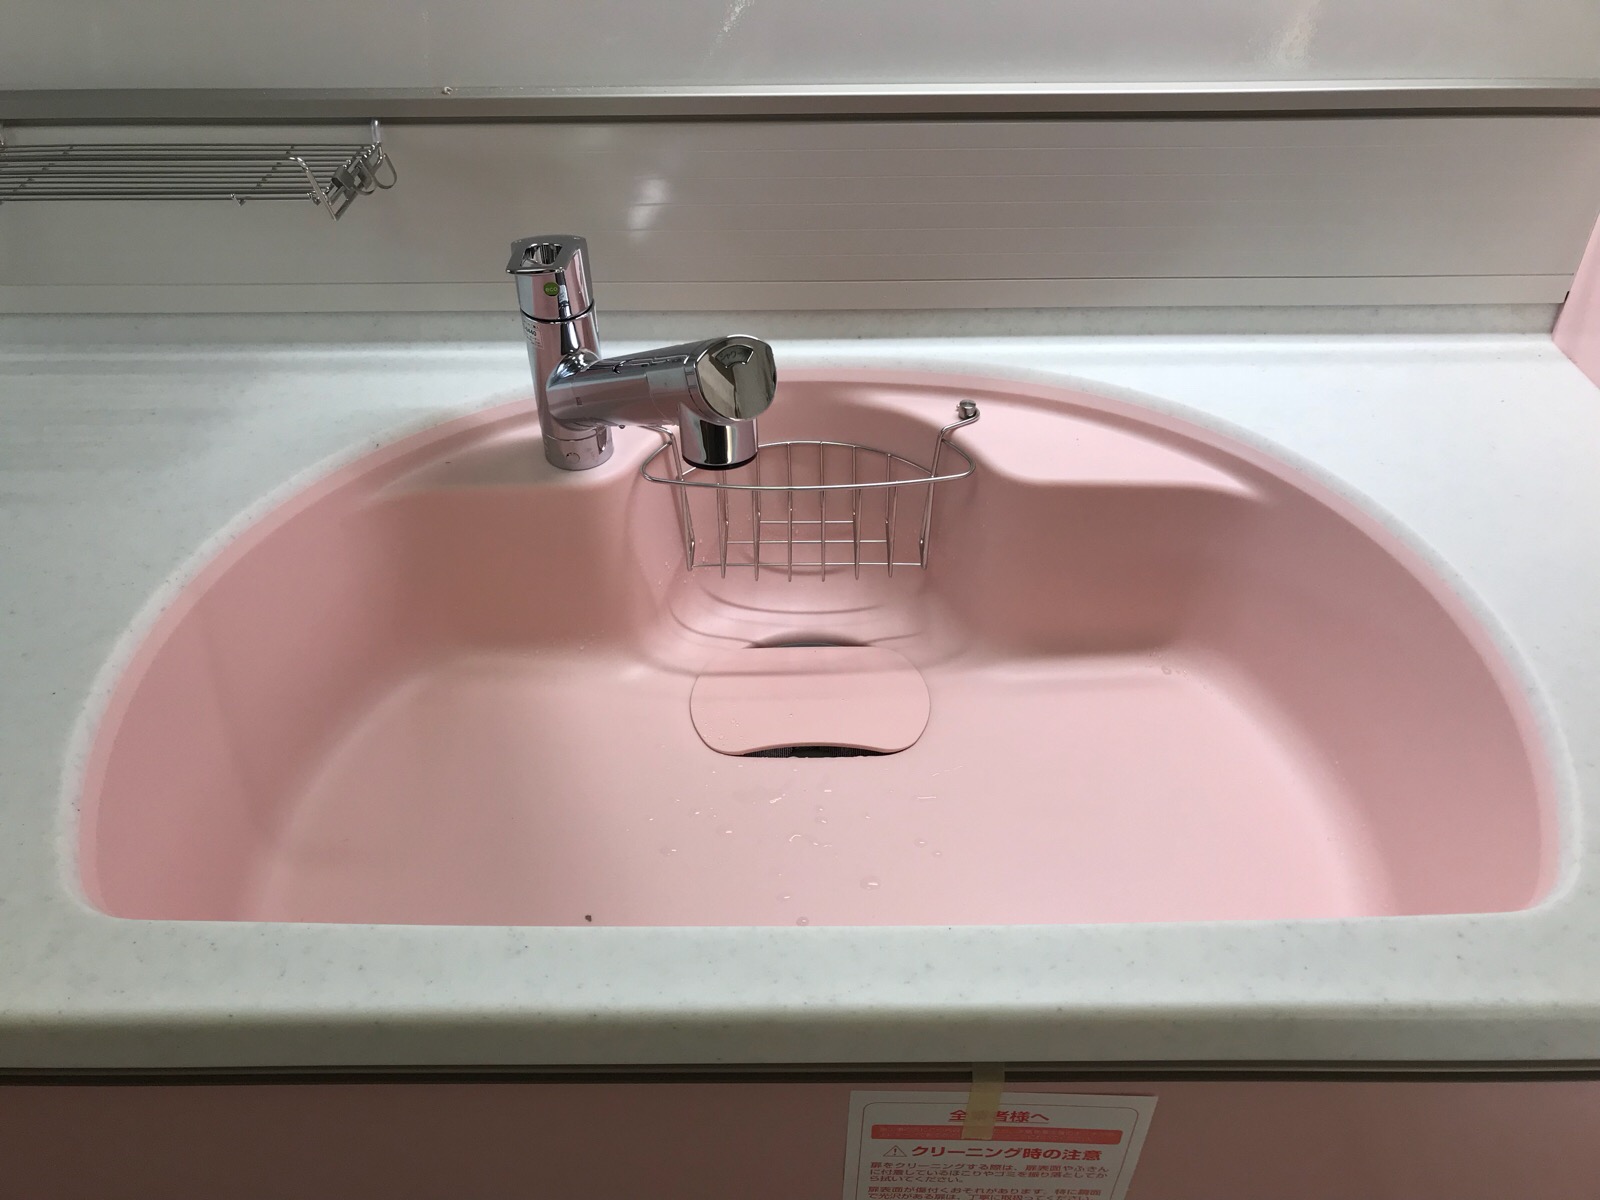 トクラスシステムキッチン設置 祝 かわいいピンク色の人造大理石マーブルシンクにお水が出ました 自宅絵画教室化リフォームスタートです No 10 幸せエネルギー研究所